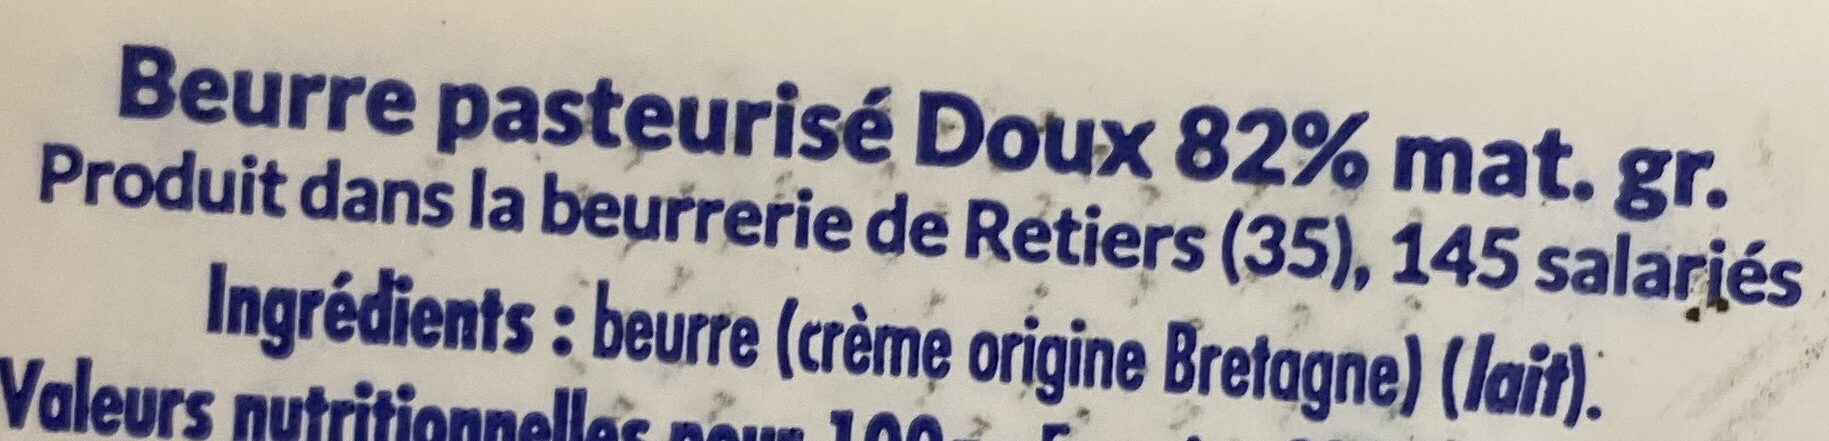 Beurre moulé breton doux - Ingrédients